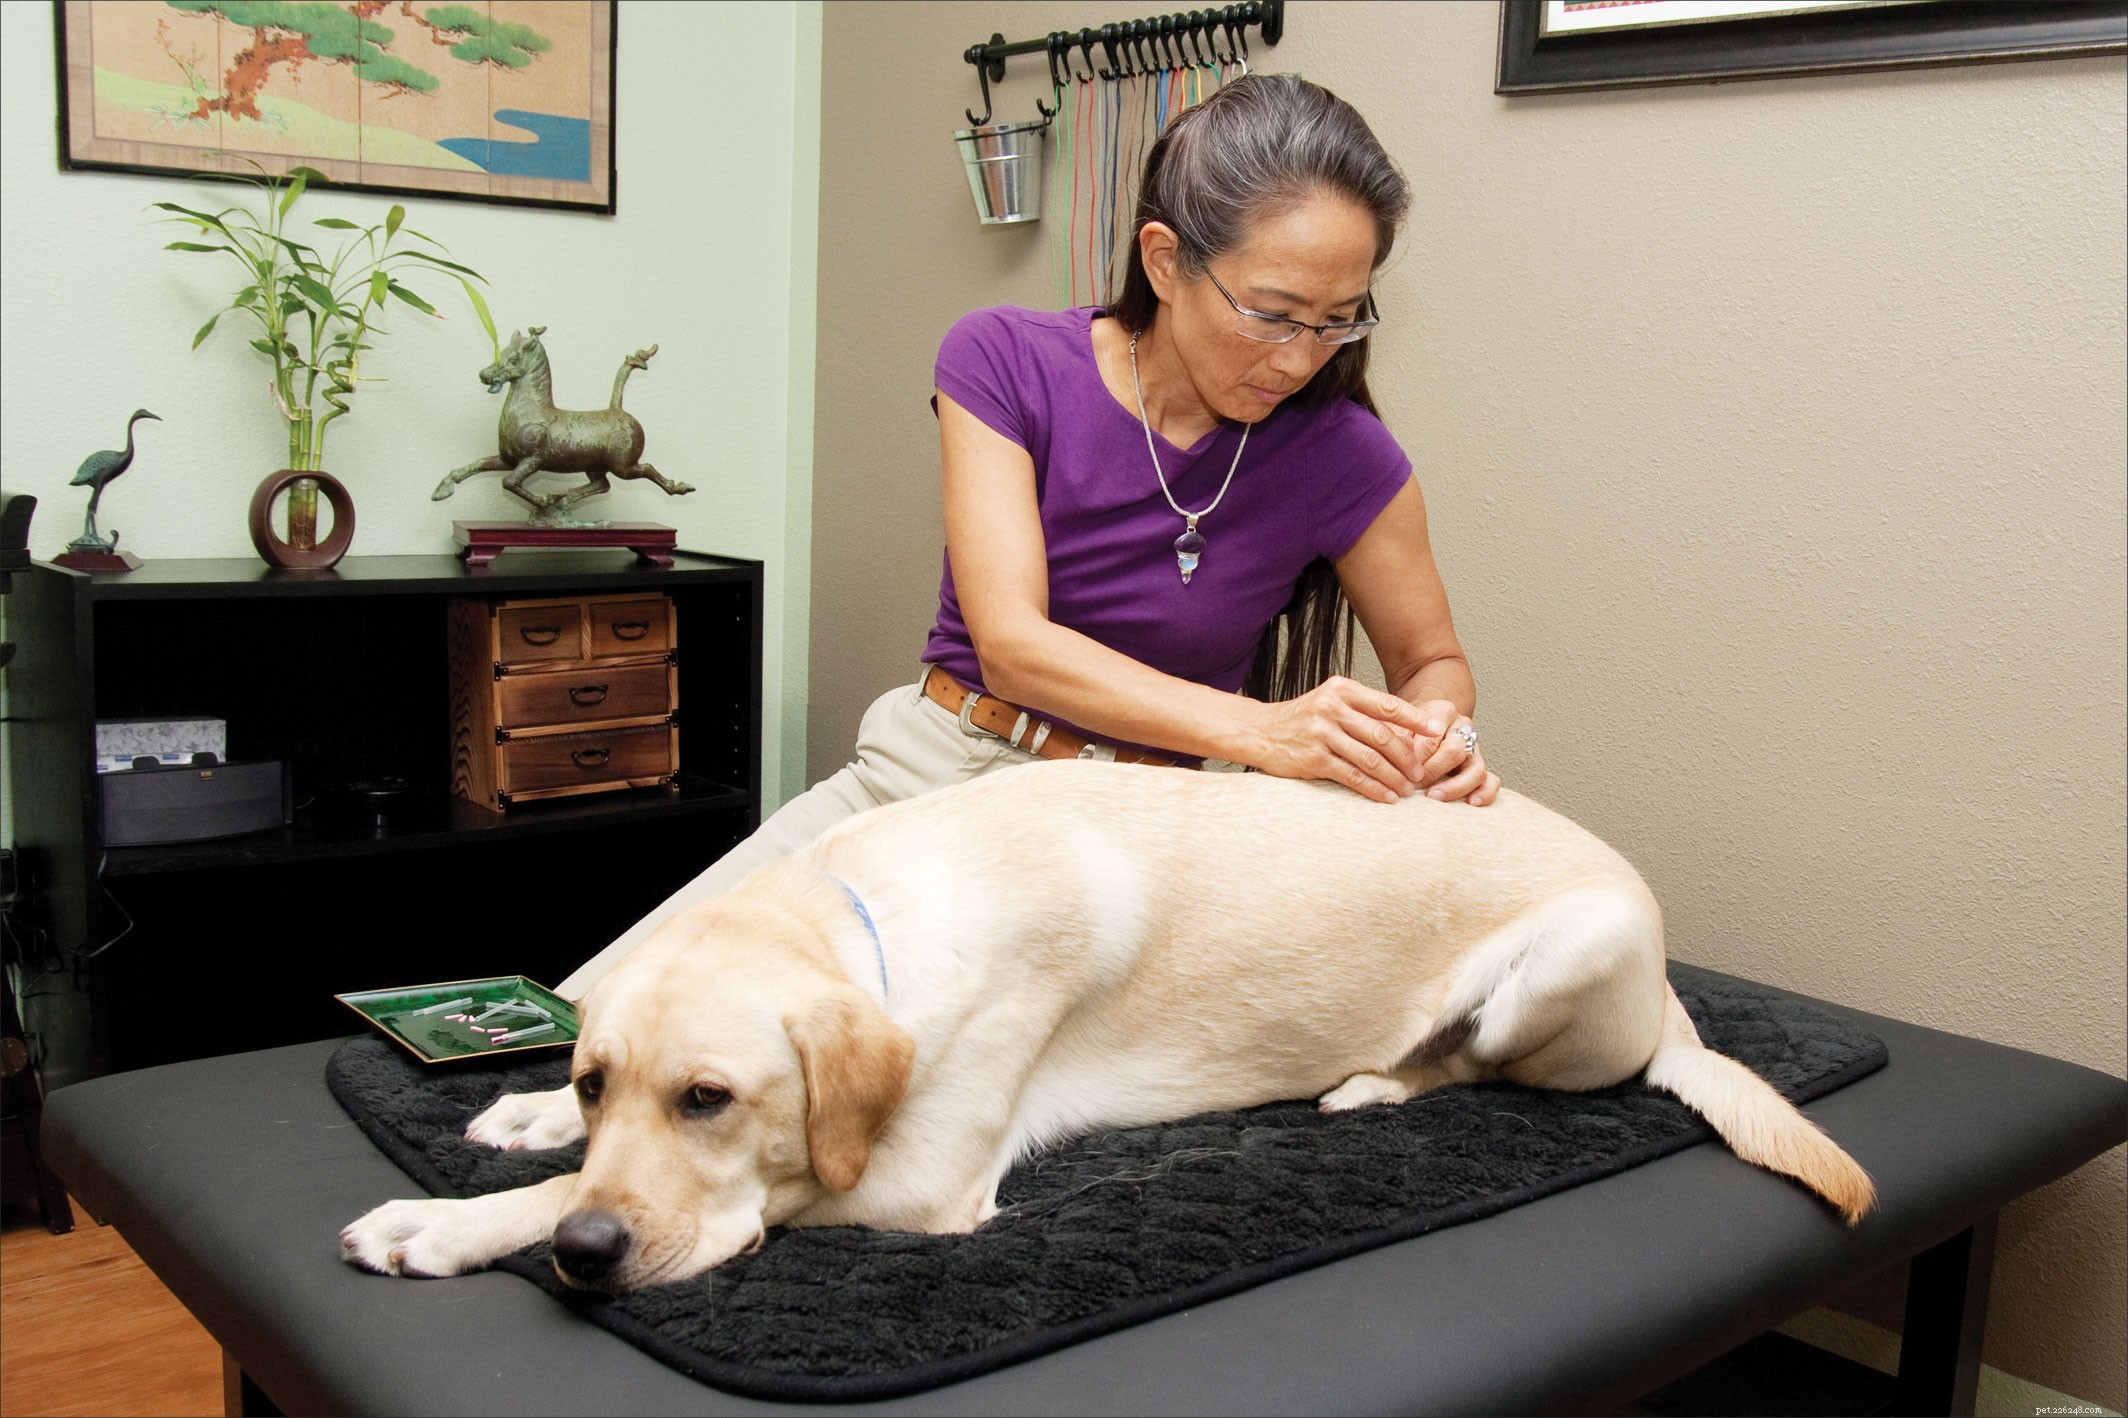 Použití veterinární akupunktury jako doplňkové léčebné metody